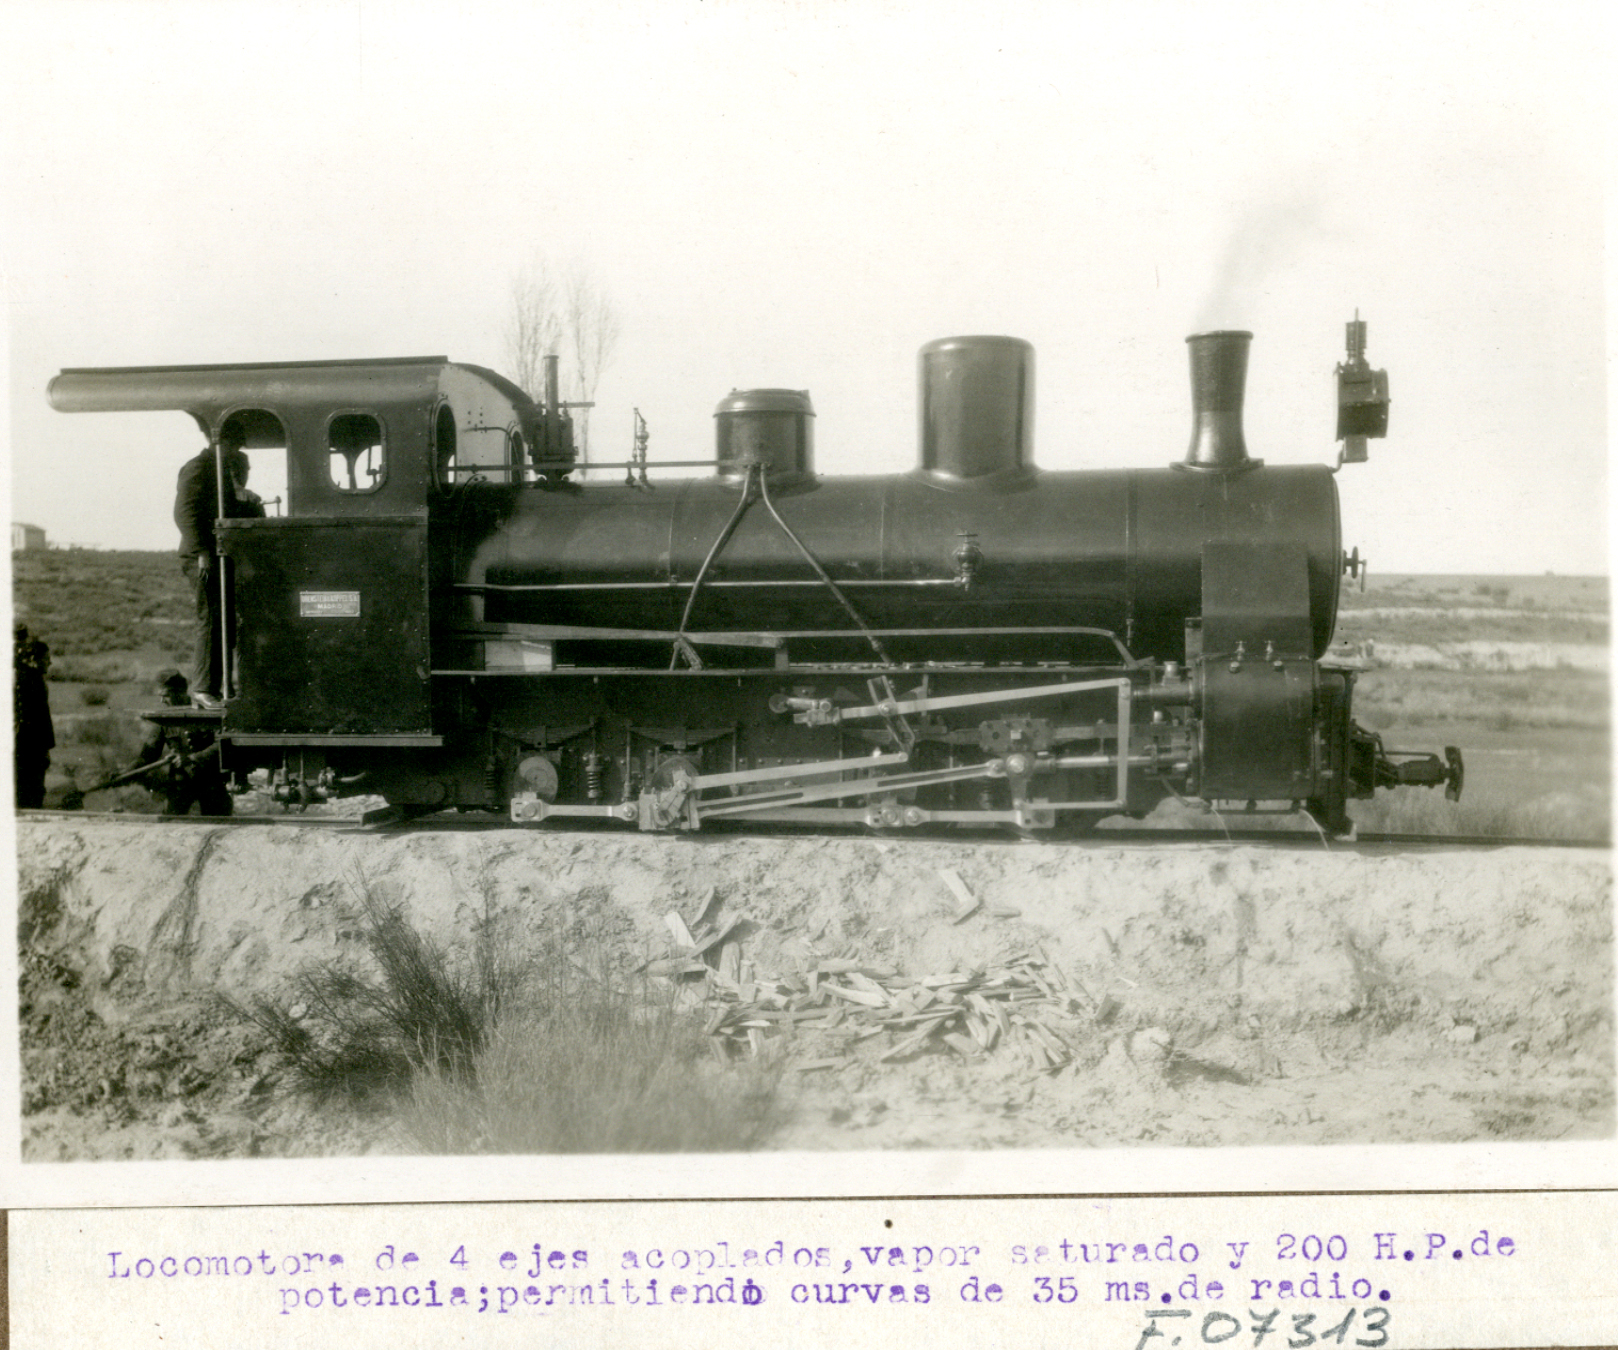 Locomotora de cuatro ejes acoplados. Demostración experimental por el cuerpo de ingenieros con la presencia de Alfonso XIII. 1922-1923, Madrid